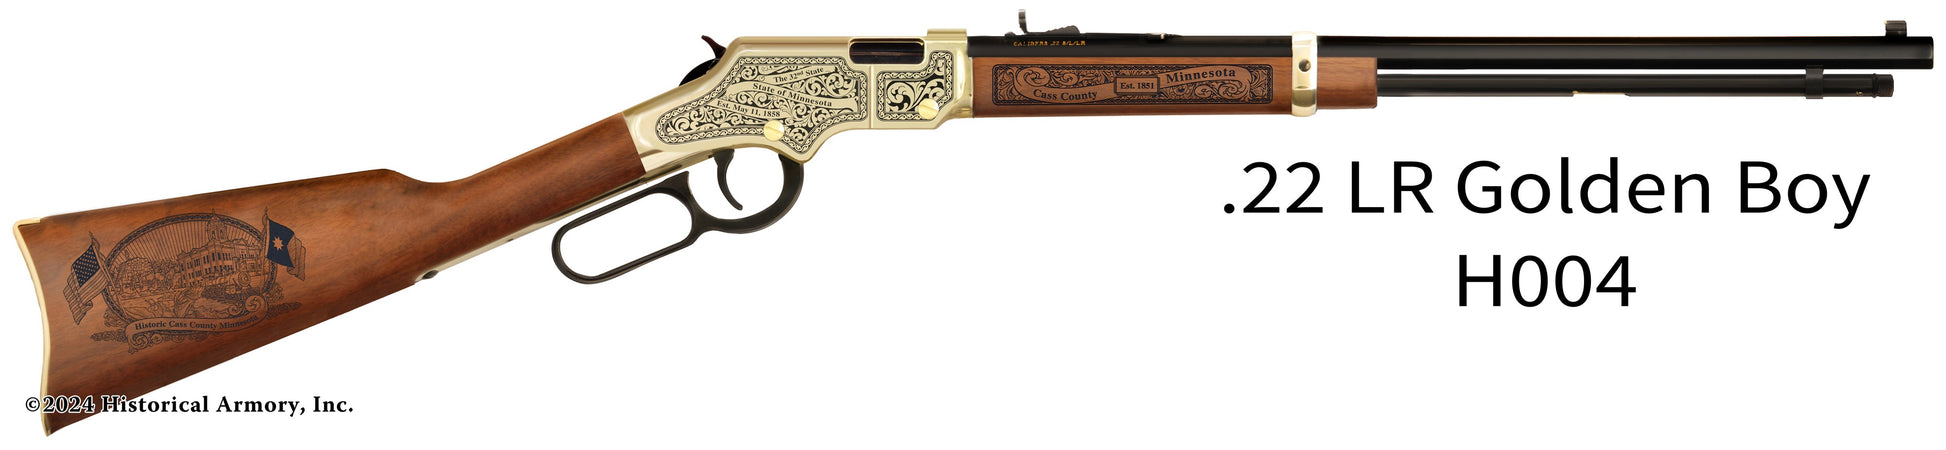 Cass County Minnesota Engraved Henry Golden Boy Rifle